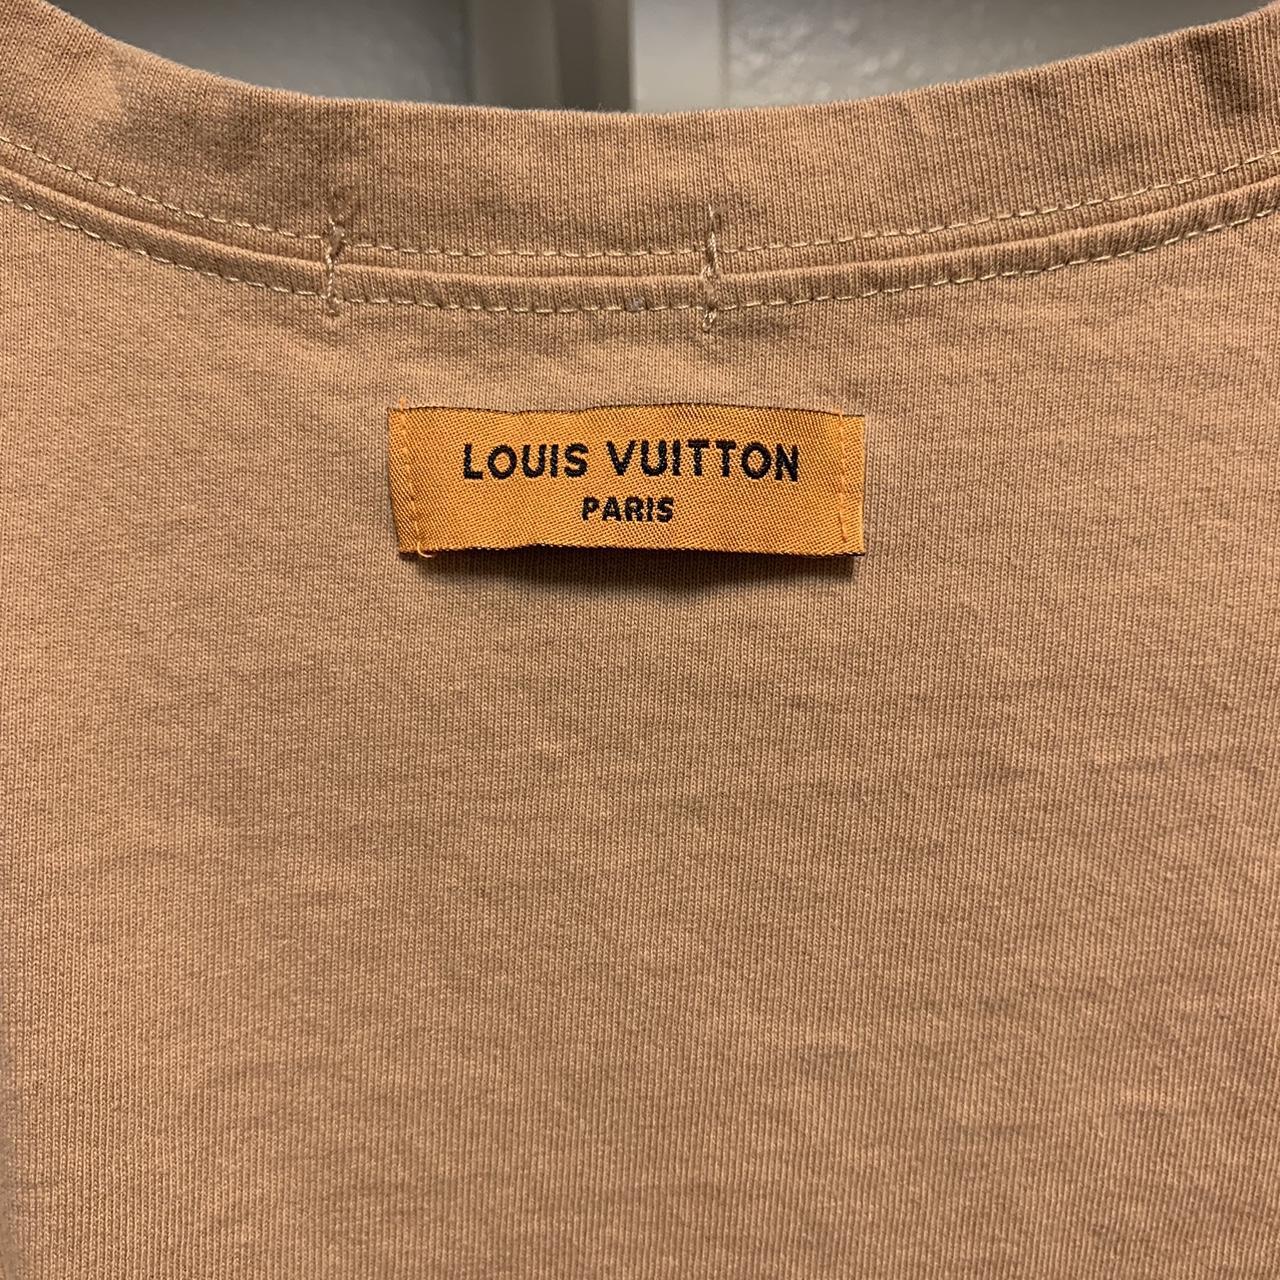 Louis Vuitton Cloud Shirt Size: 4L Fits like a Large - Depop